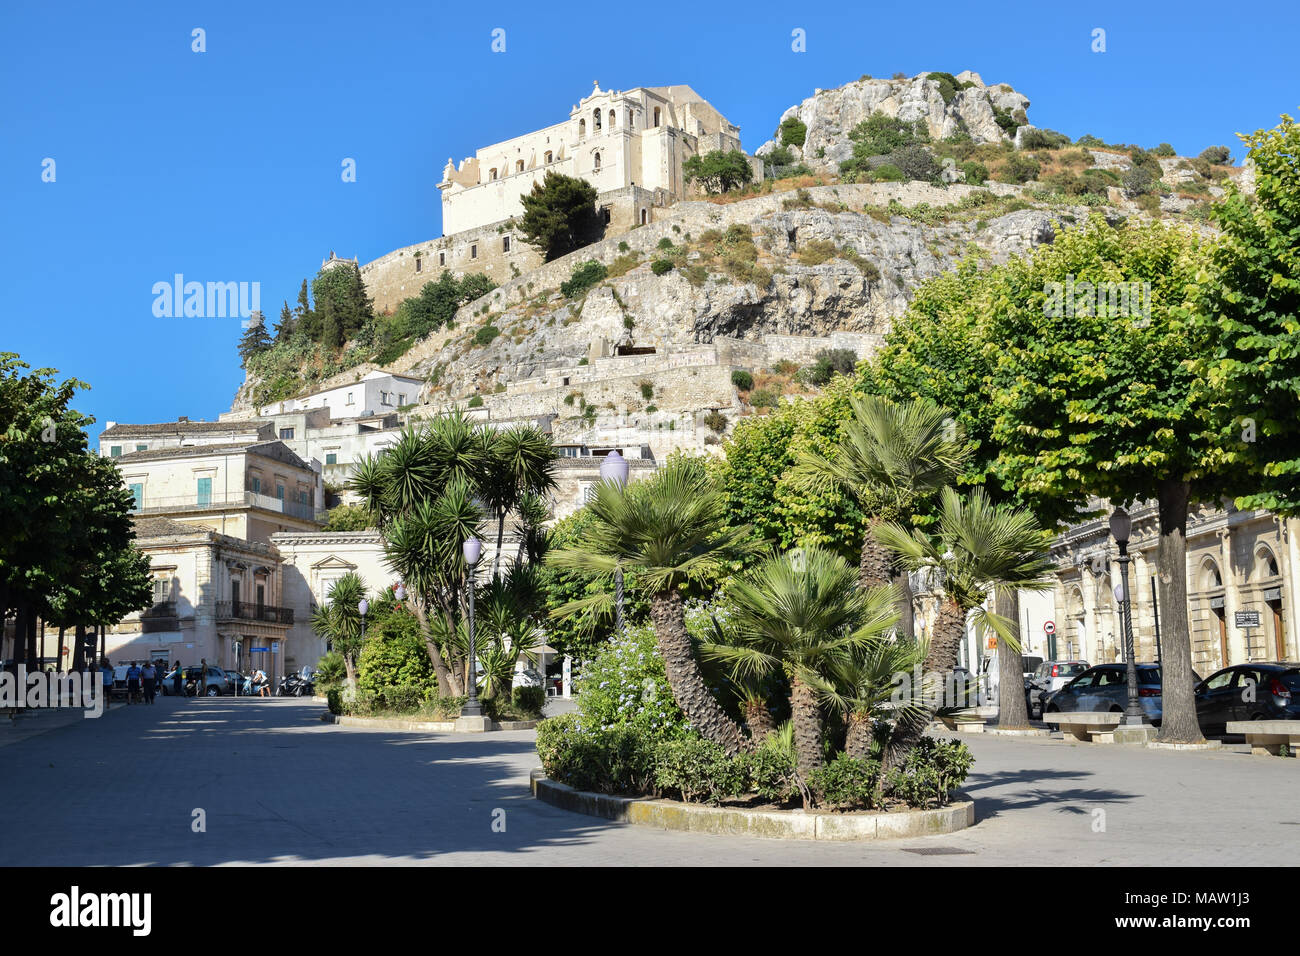 Piazza (square) in Scicli (UNESCO world heritage site), Sicily Stock Photo